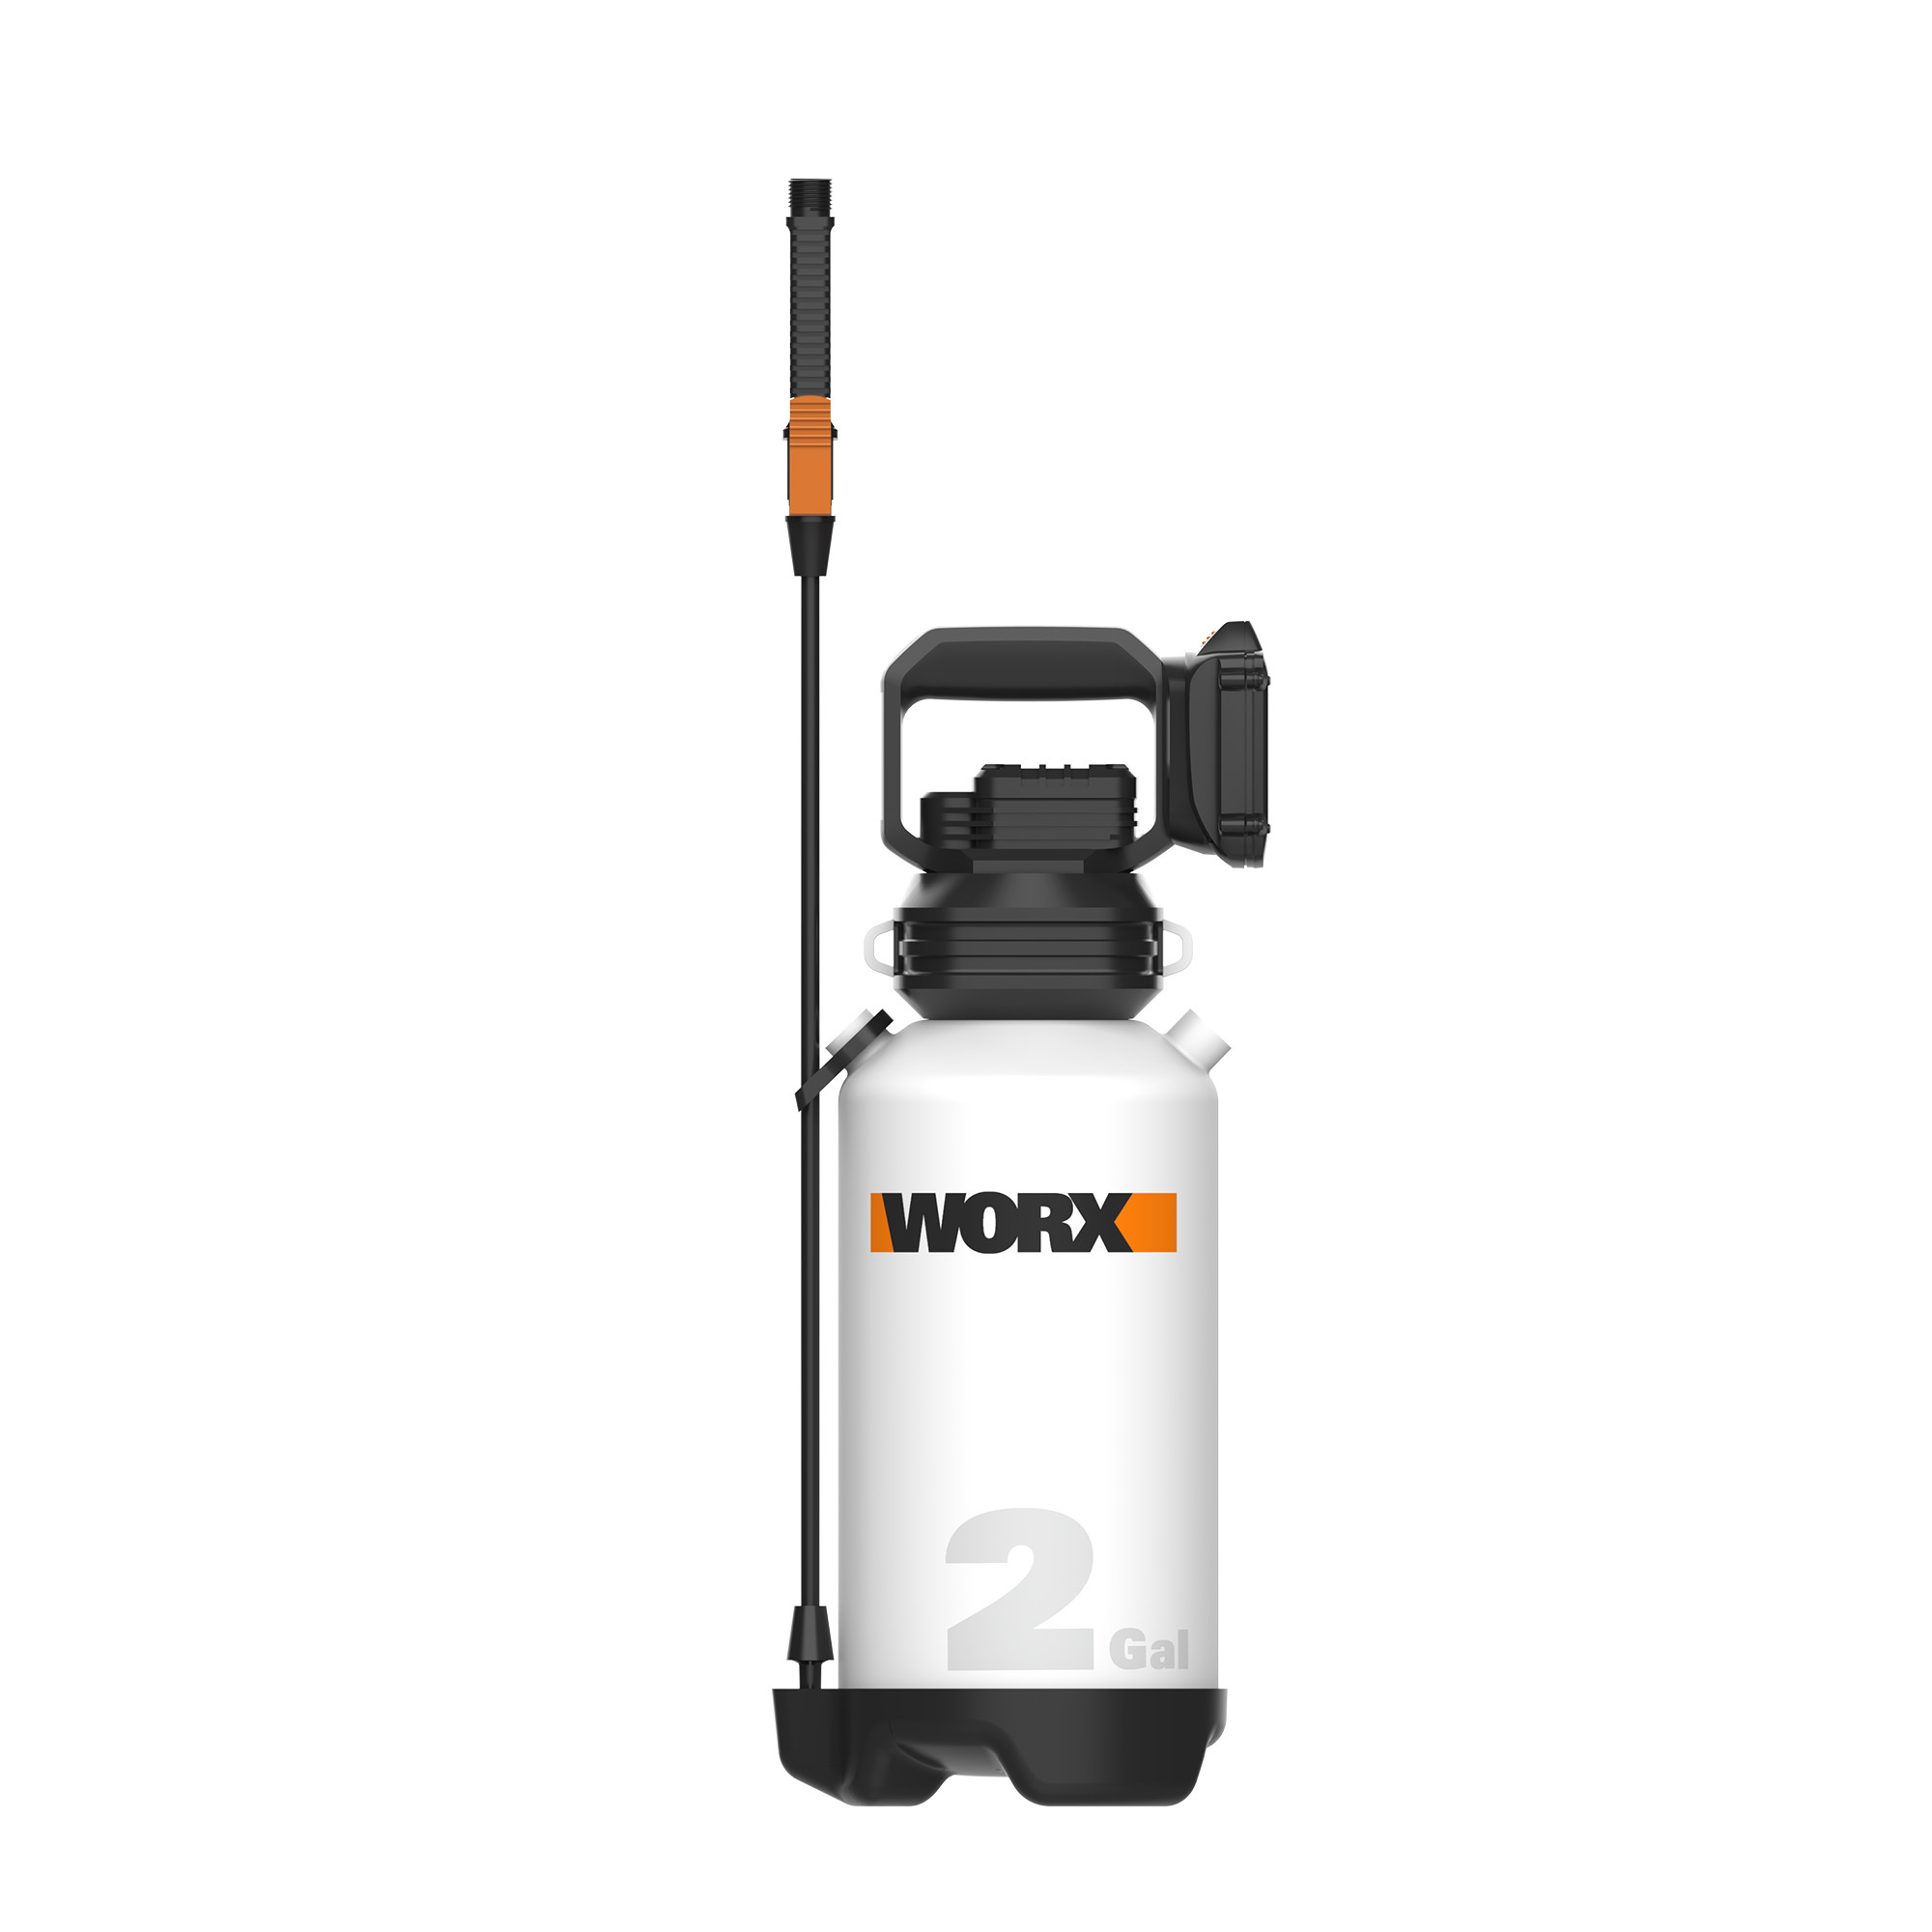 WORX 20V, 2-gal. Lawn Sprayer (WG829)